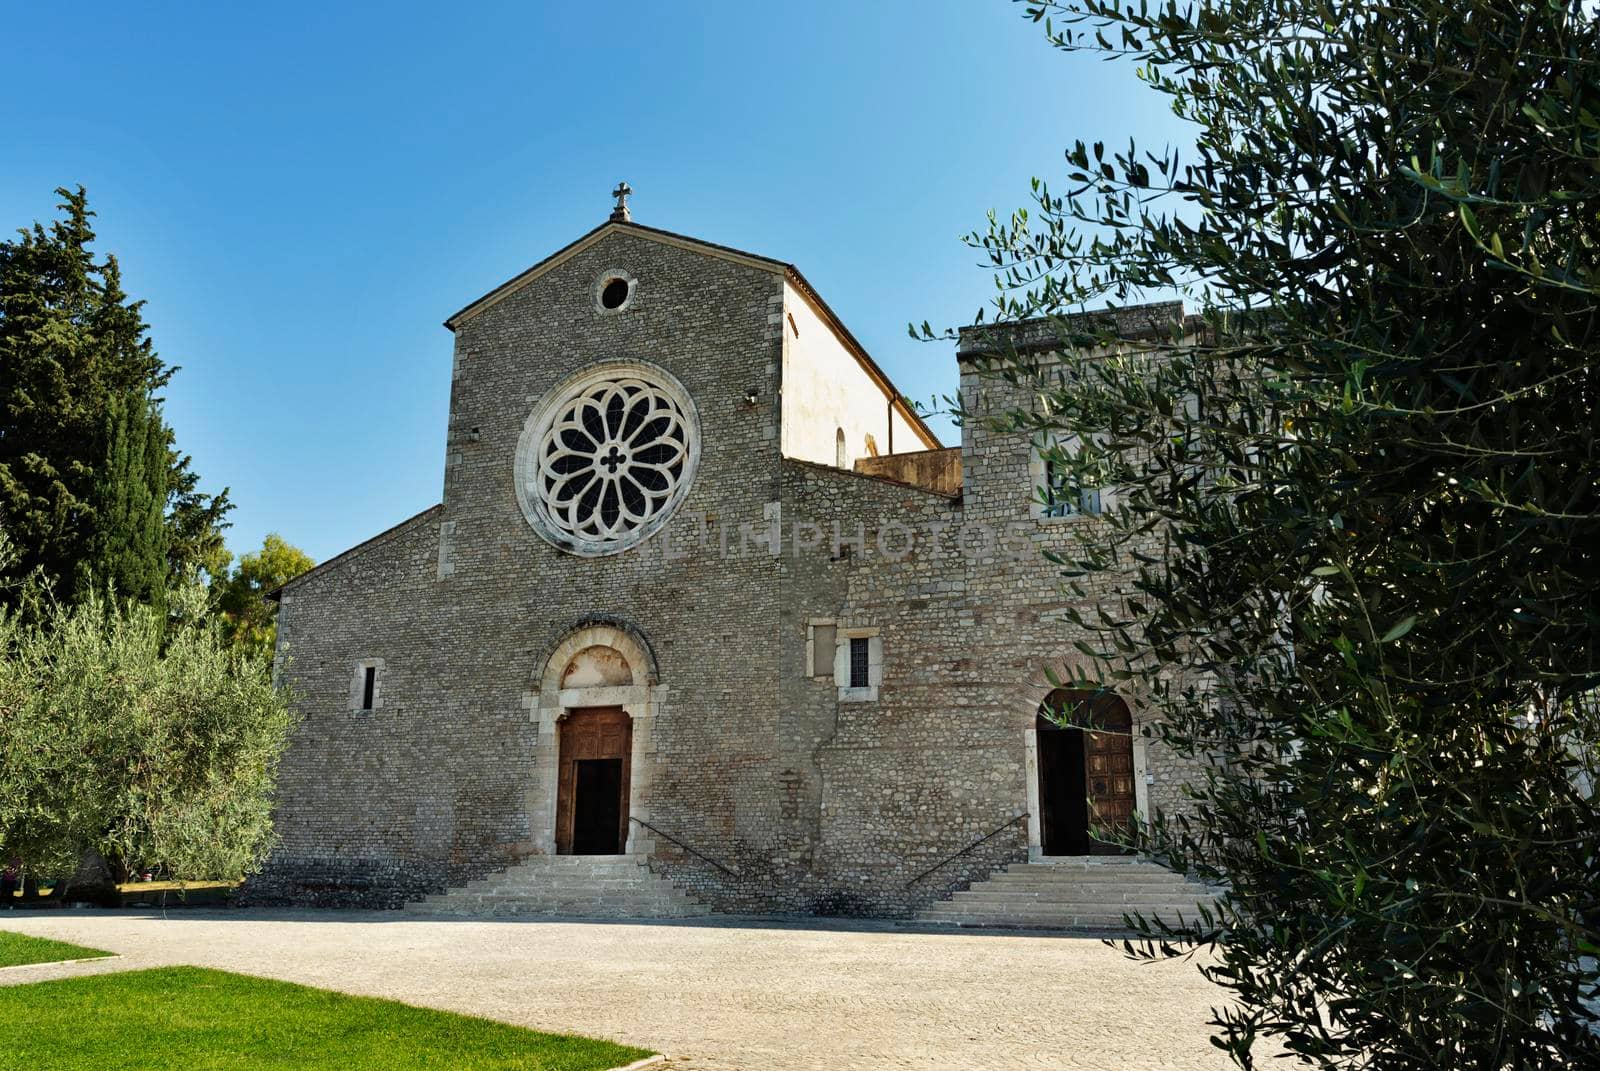 Sermoneta , Italy , Valvisciolo Abbey by victimewalker